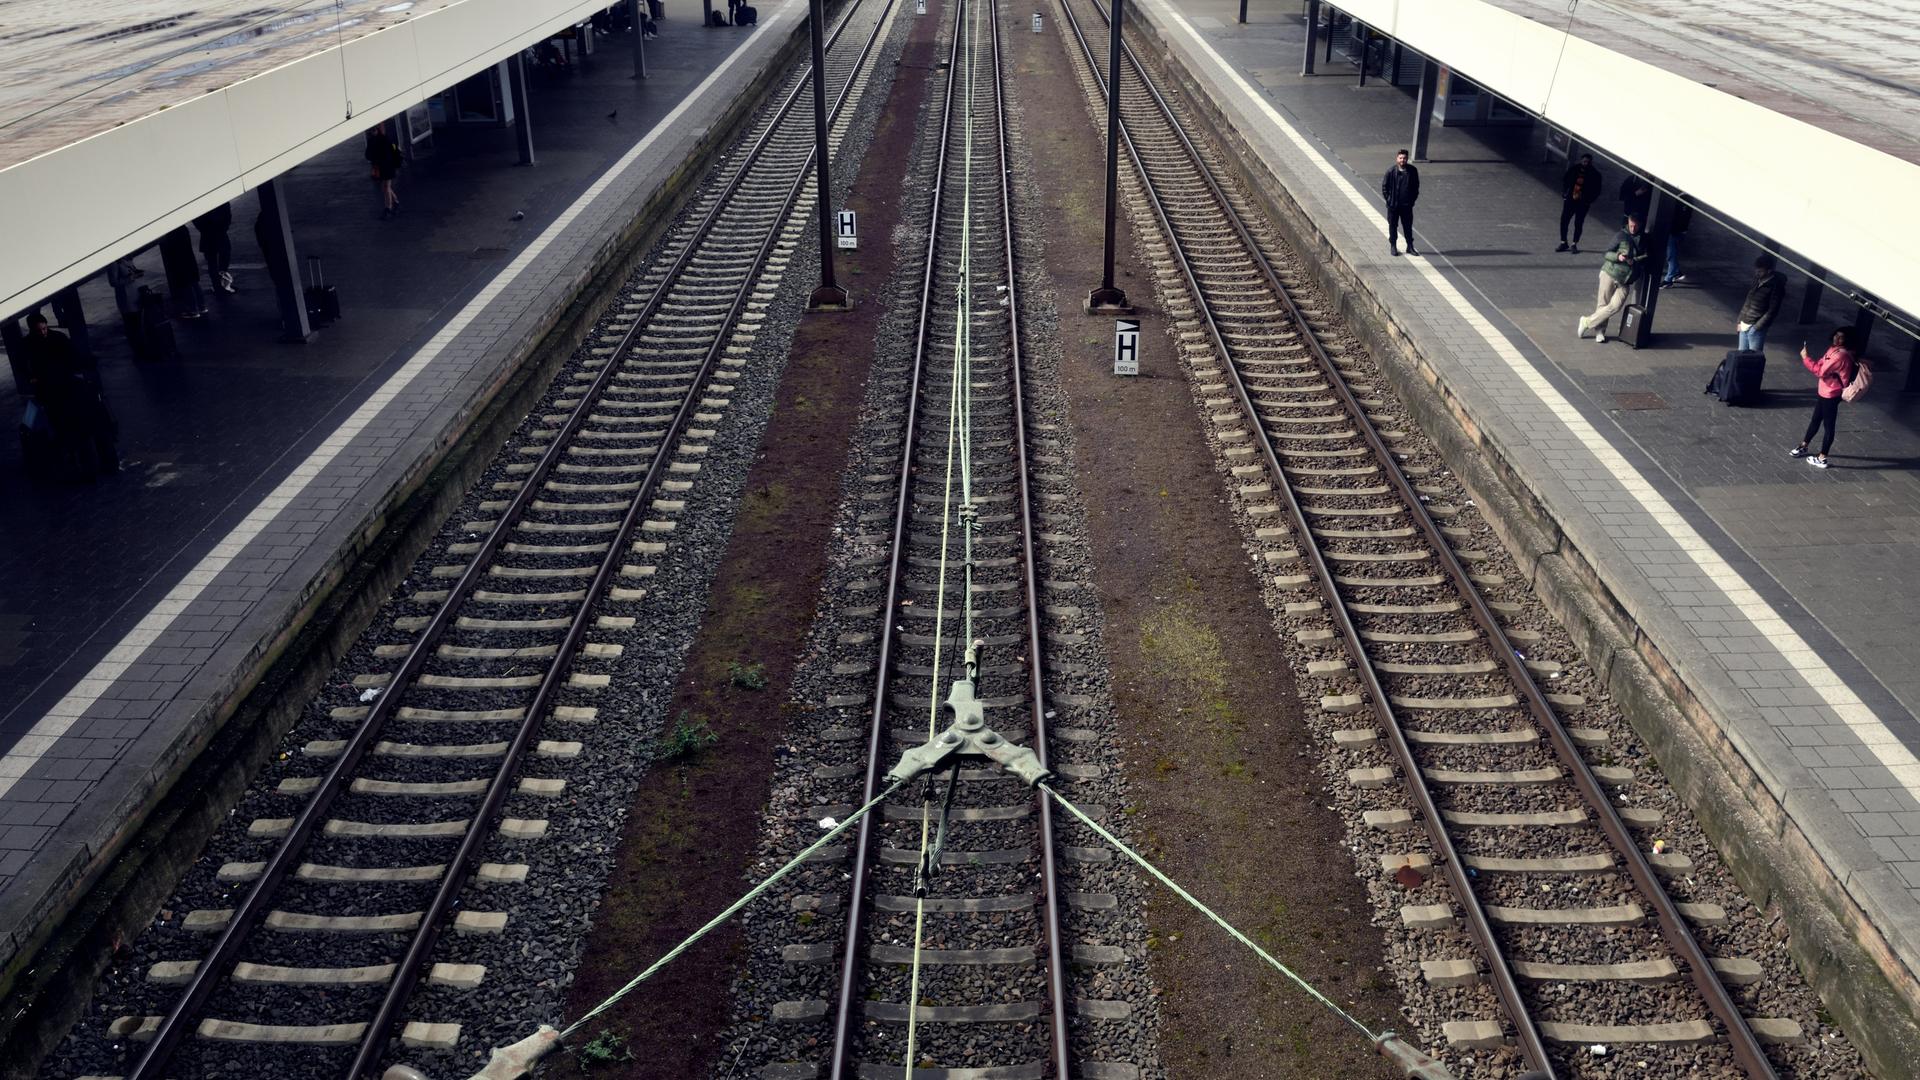 Leere Schienen und ein Bahnsteig mit wenigen wartenden Reisenden